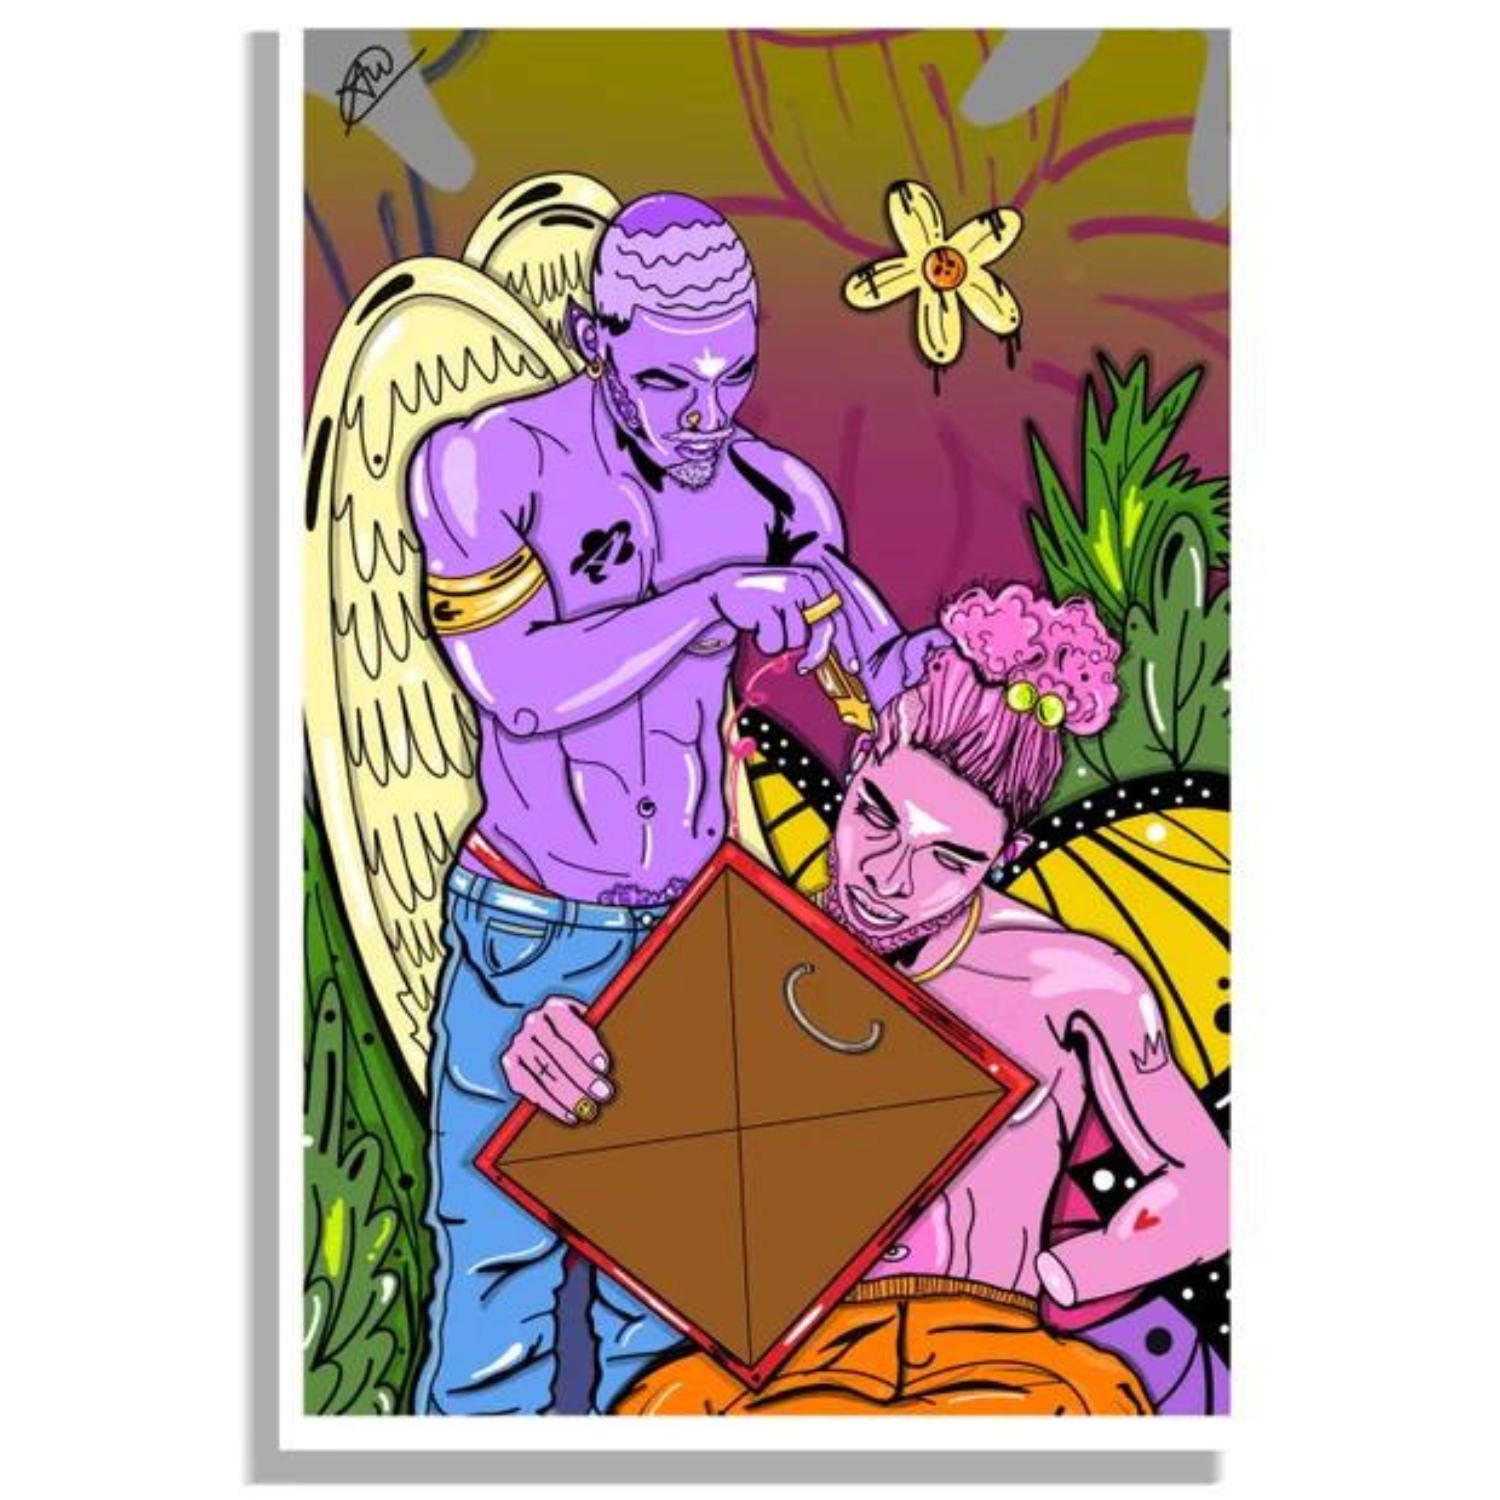 Zeer kleurrijke Poster Print 'Nu Beginnings' geschilderd door Antzinyopants. Gay Art en LGBTQ+ Art van Antzinyopants is te koop bij Flavourez.